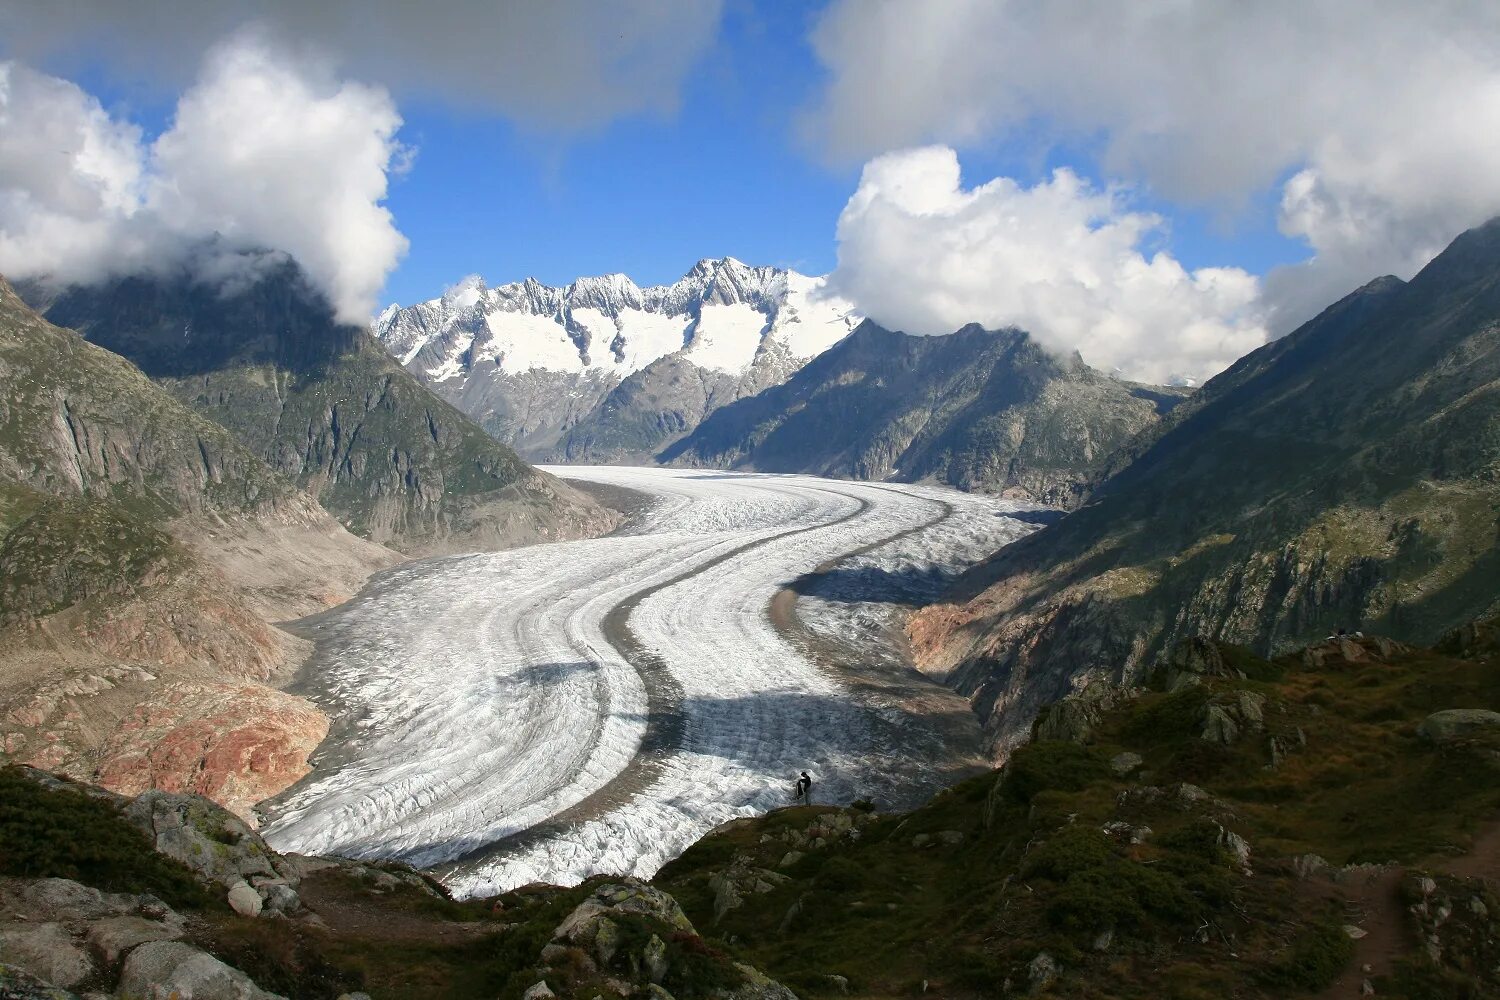 Самый большой горный ледник в мире. Алечский ледник Швейцария. Горы Юнгфрау — ледник Алетч. Юнгфрау-Алеч-Бичхорн (Бернские Альпы). Большой Алечский ледник Швейцария.